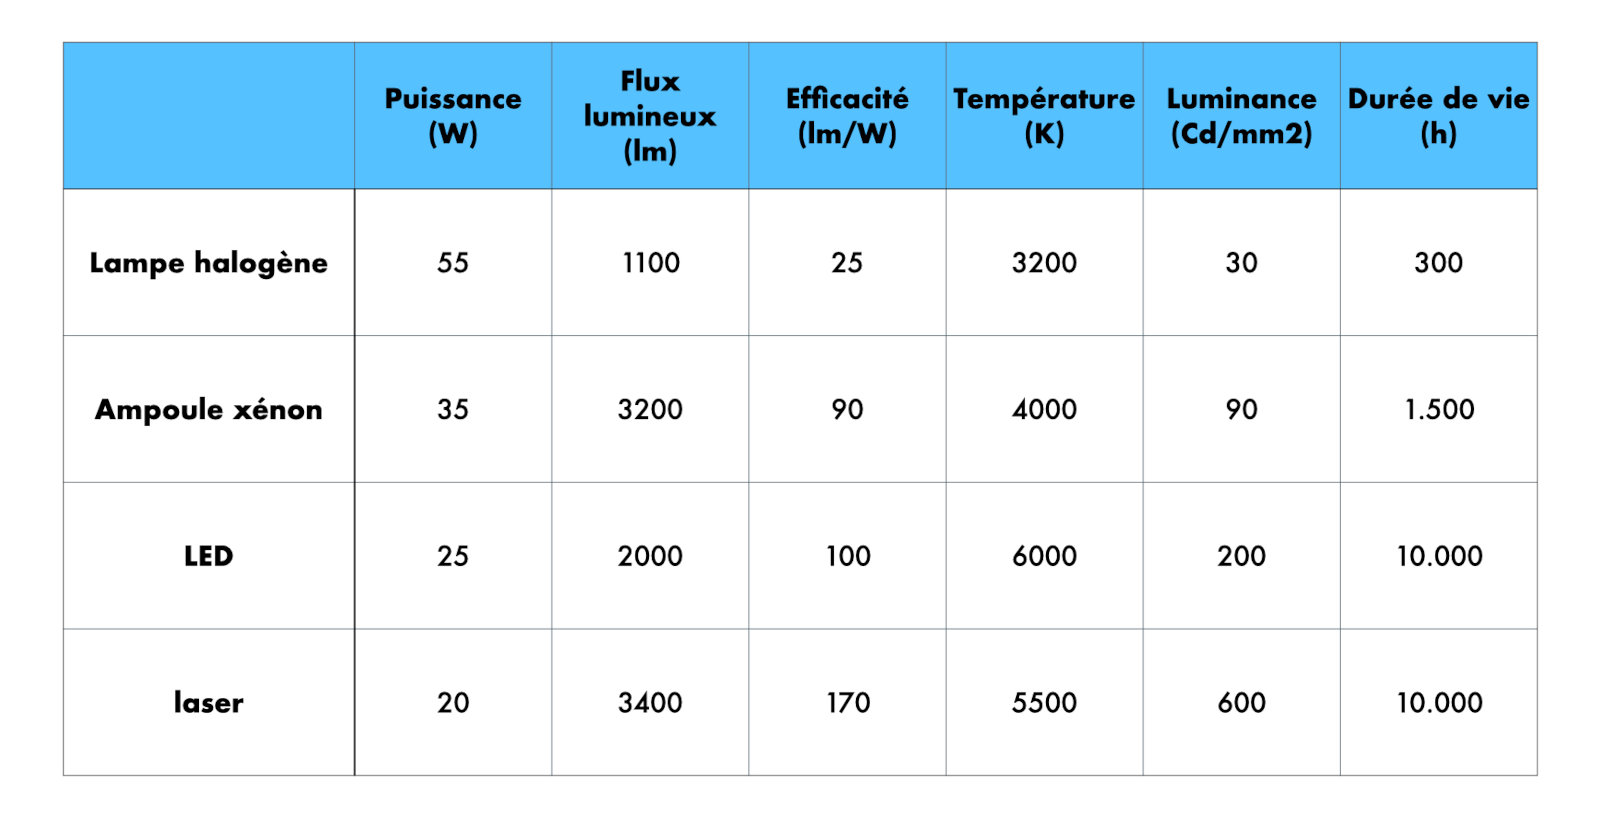 Comparaison entre les différents types d'éclairage (incandescence, halogène, xénon, LED, laser)